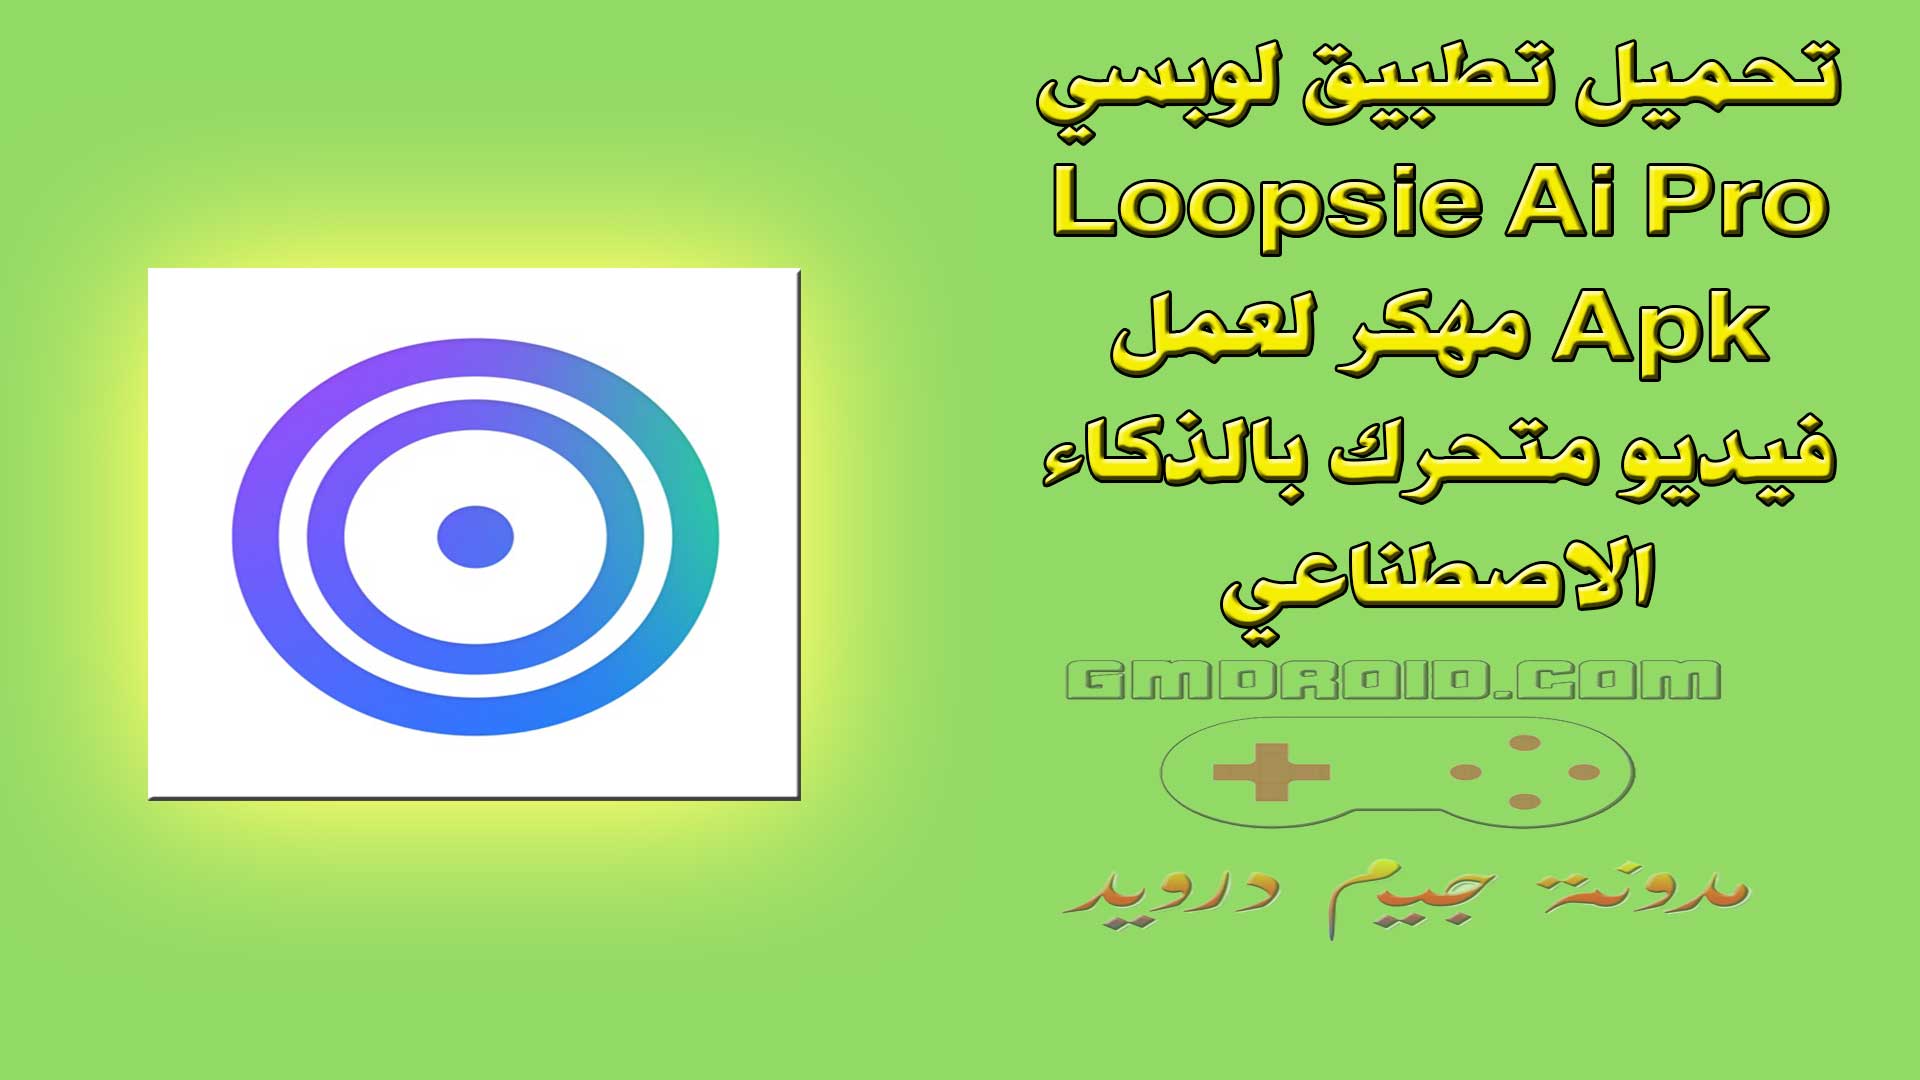 تحميل تطبيق لوبسي Loopsie Ai Pro Apk مهكر لعمل فيديو متحرك بالذكاء الاصطناعي